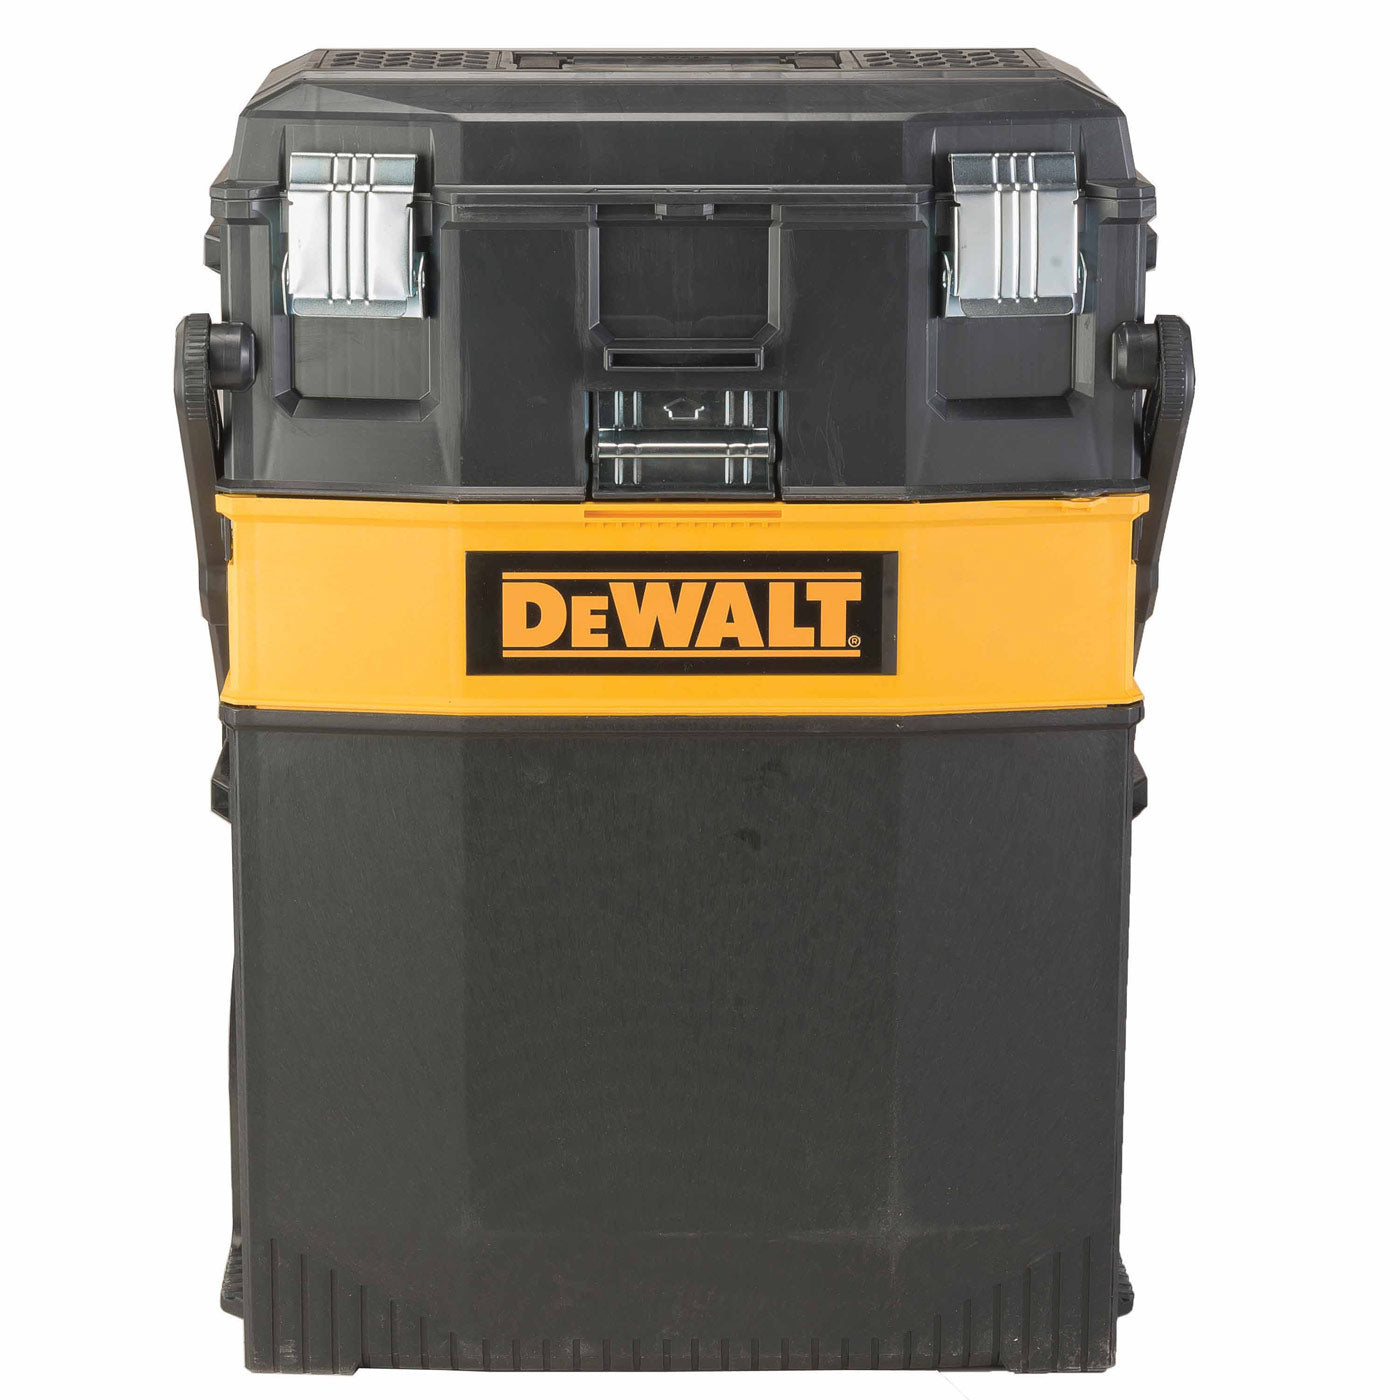 DeWalt DWST20880 Multi-Level Workshop Tool Box